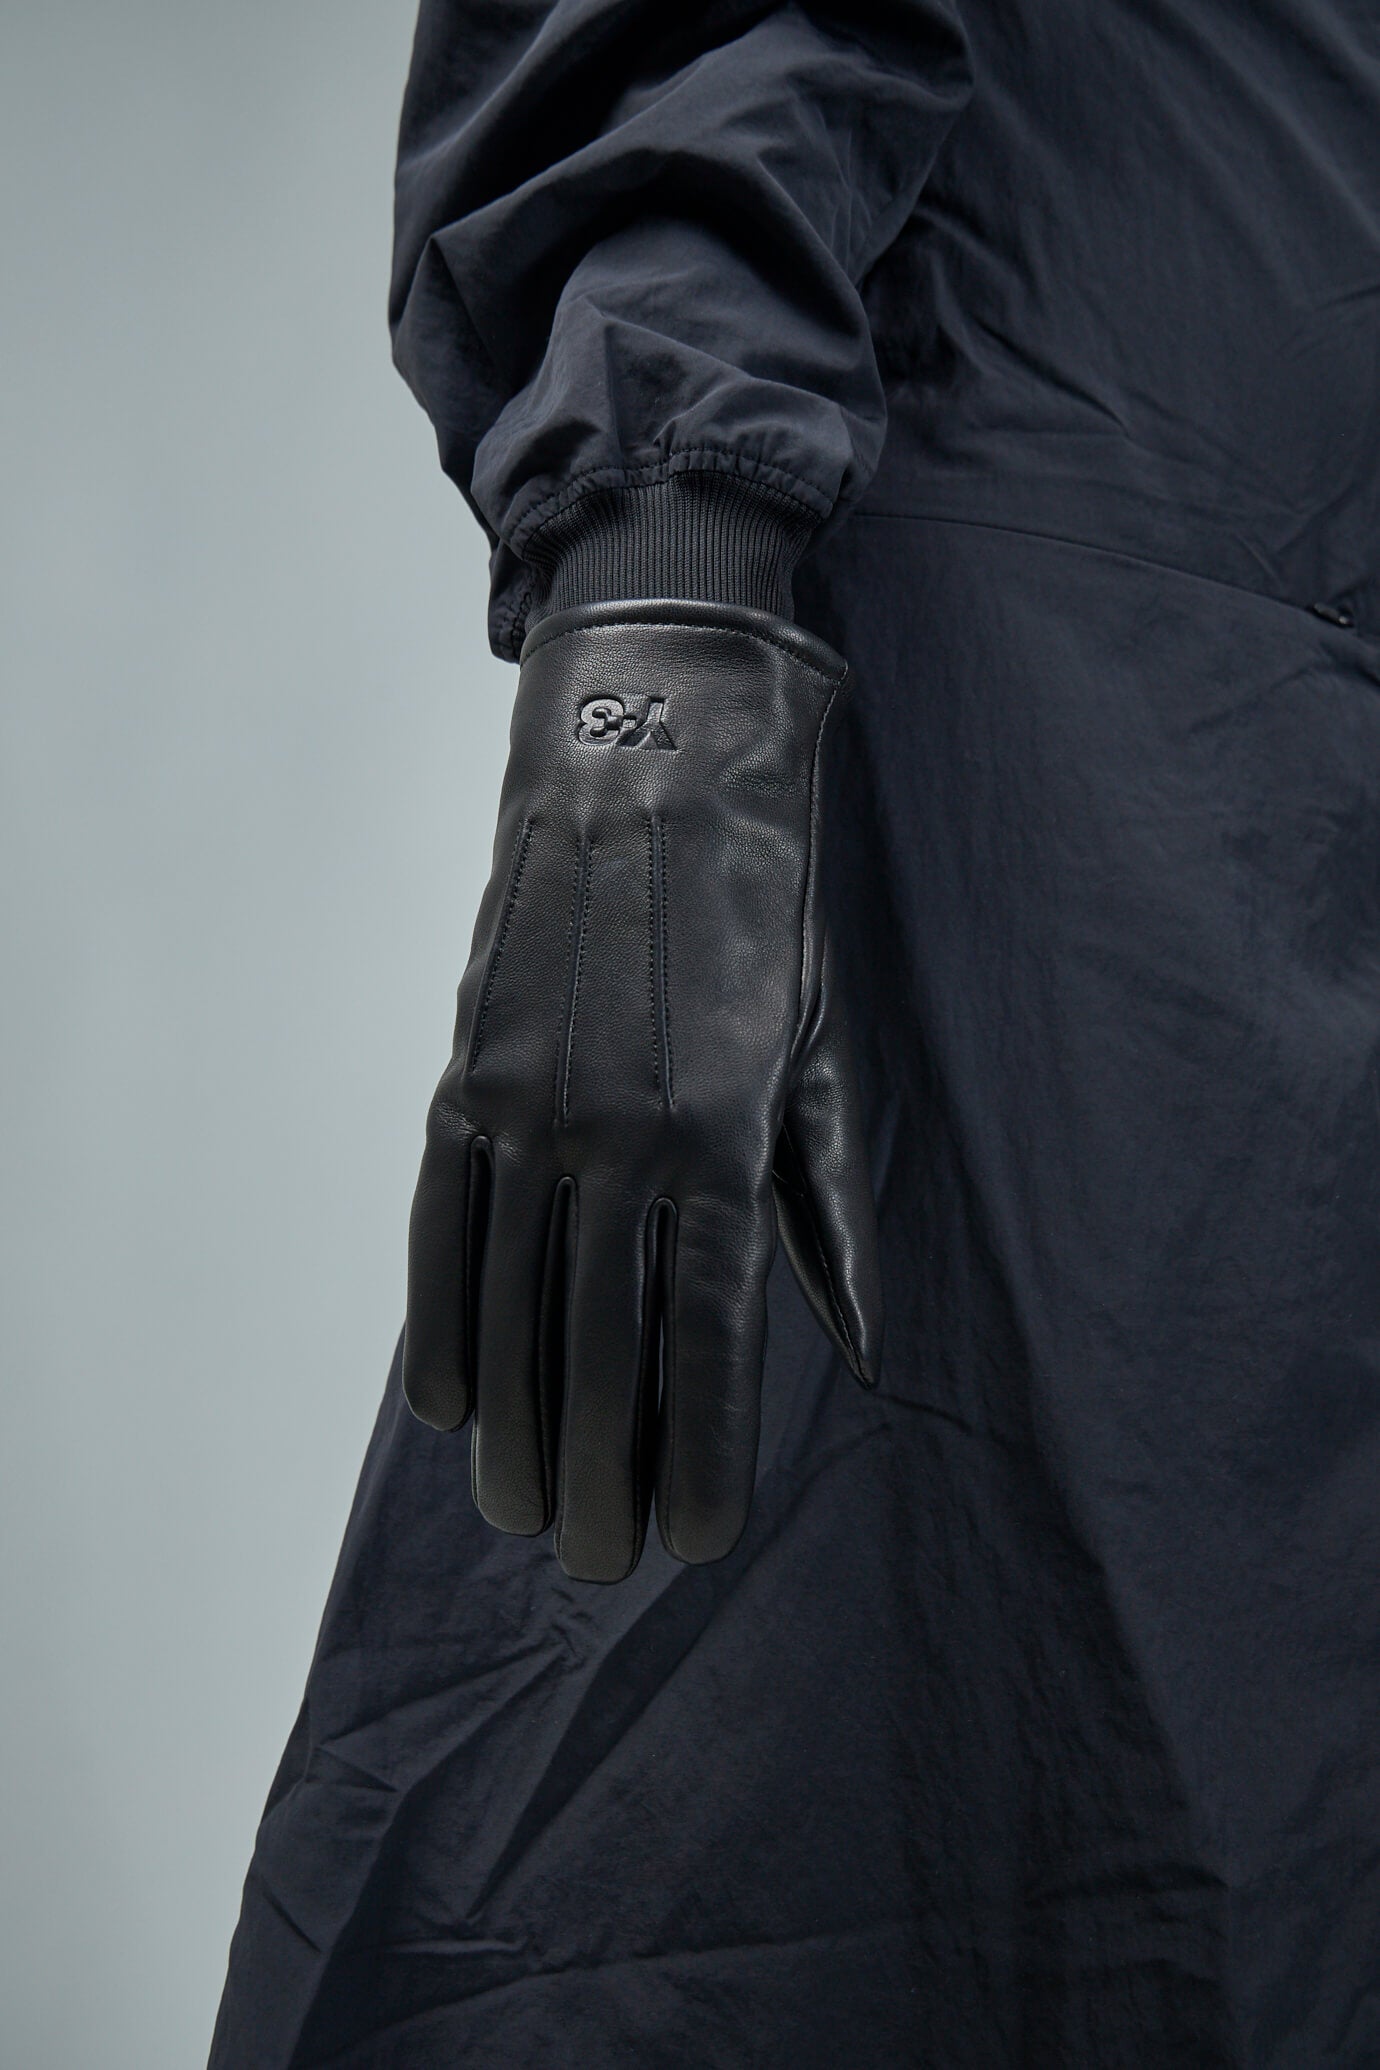 Y-3 Lux Gloves